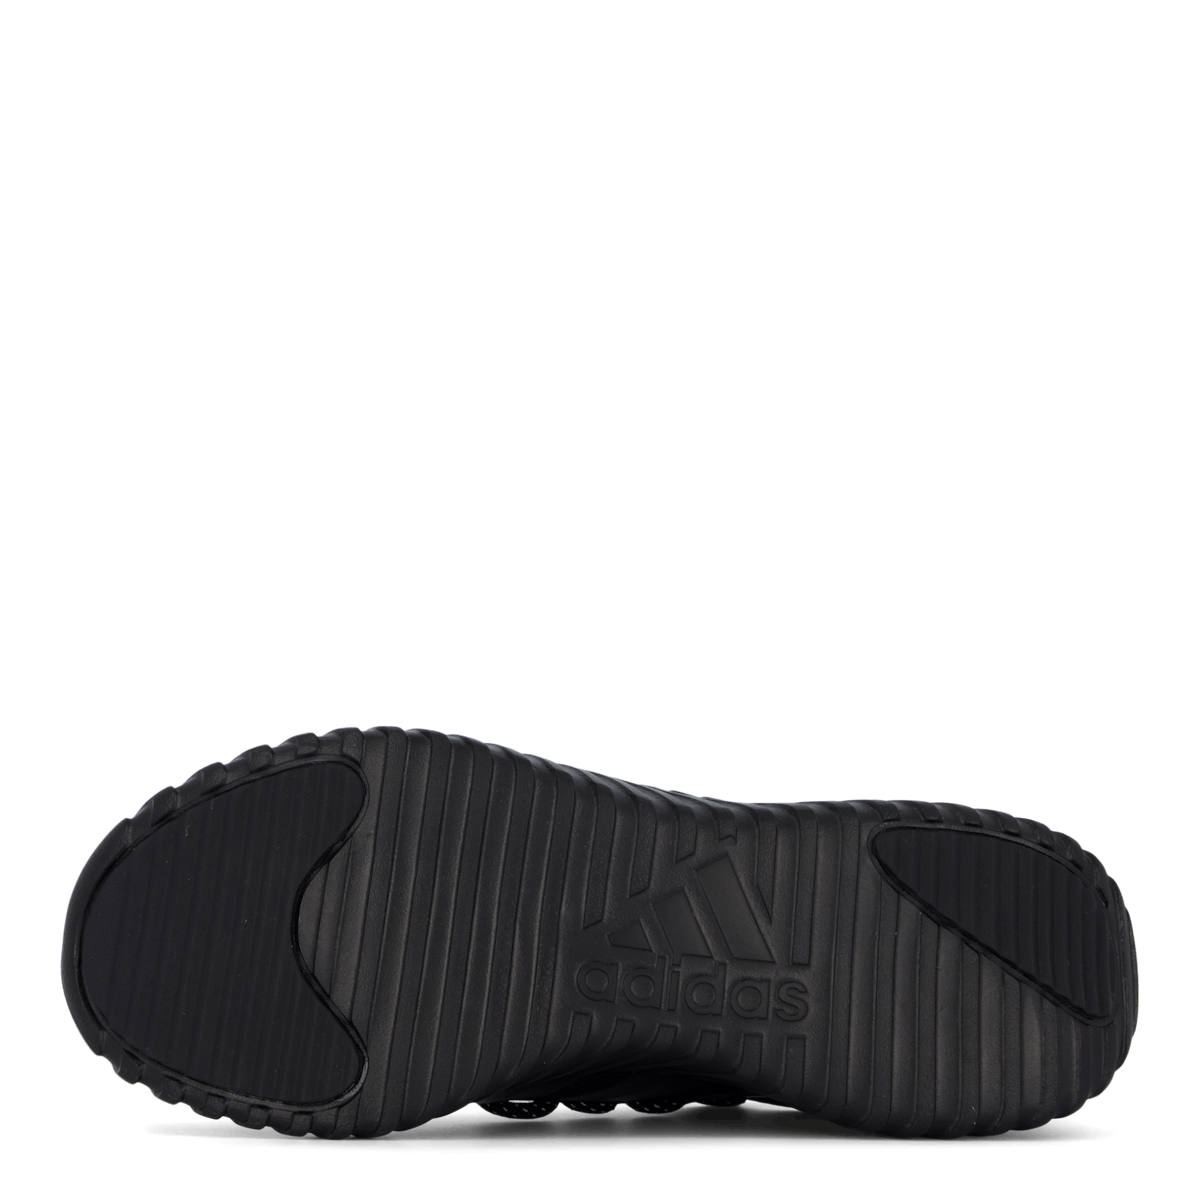 Kaptir 3.0 Shoes Core Black / Core Black / Core Black